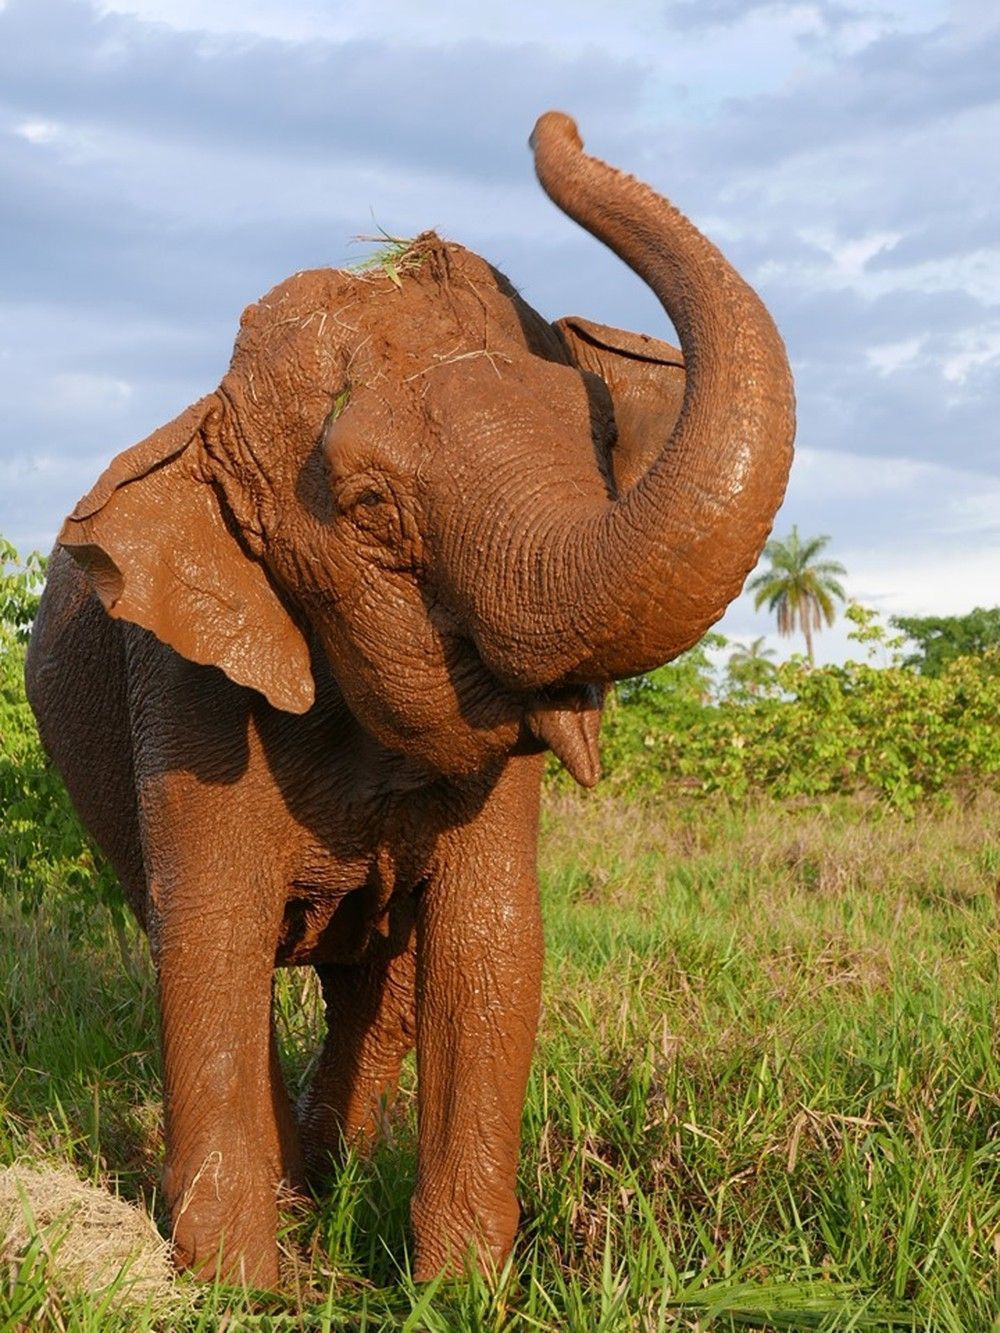 As presas de um elefante são os segundos incisivos superiores. As presas crescem continuamente; as presas de um adulto médio crescem aproximadamente 15 cm por ano